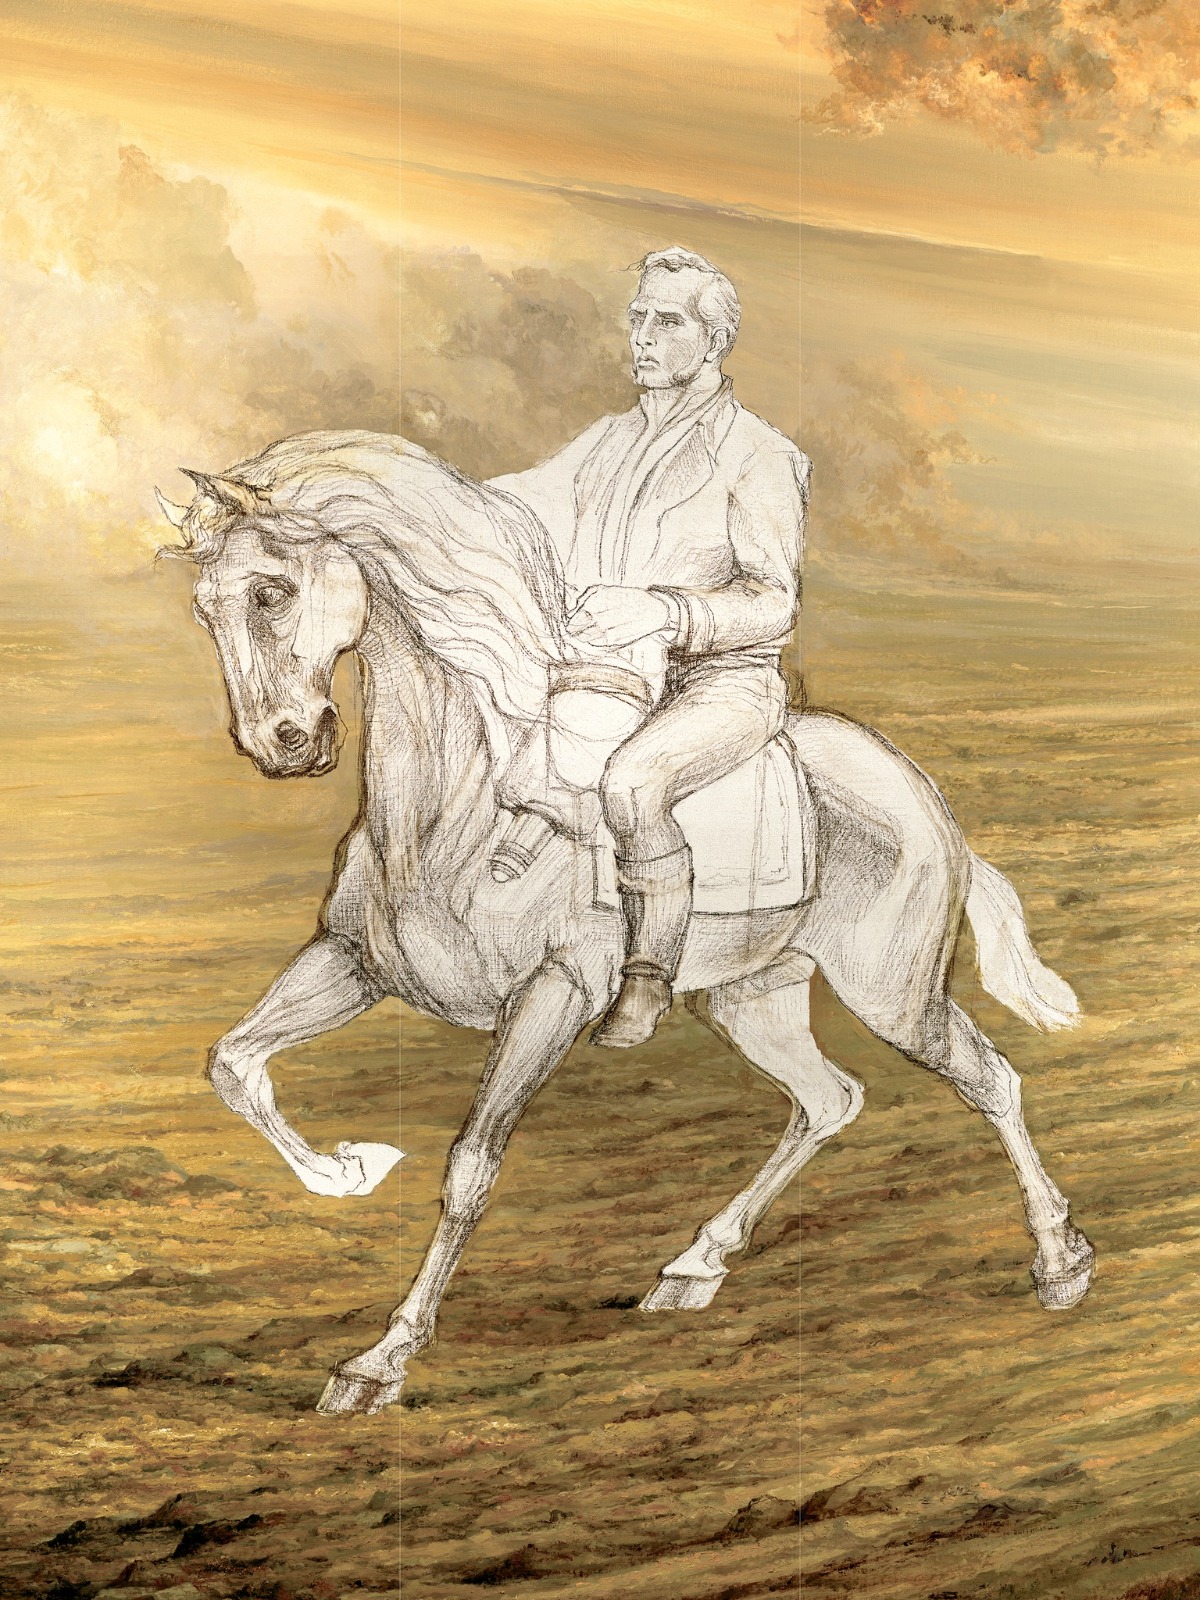 Un dibujo de una persona con un caballo

Descripción generada automáticamente con confianza baja